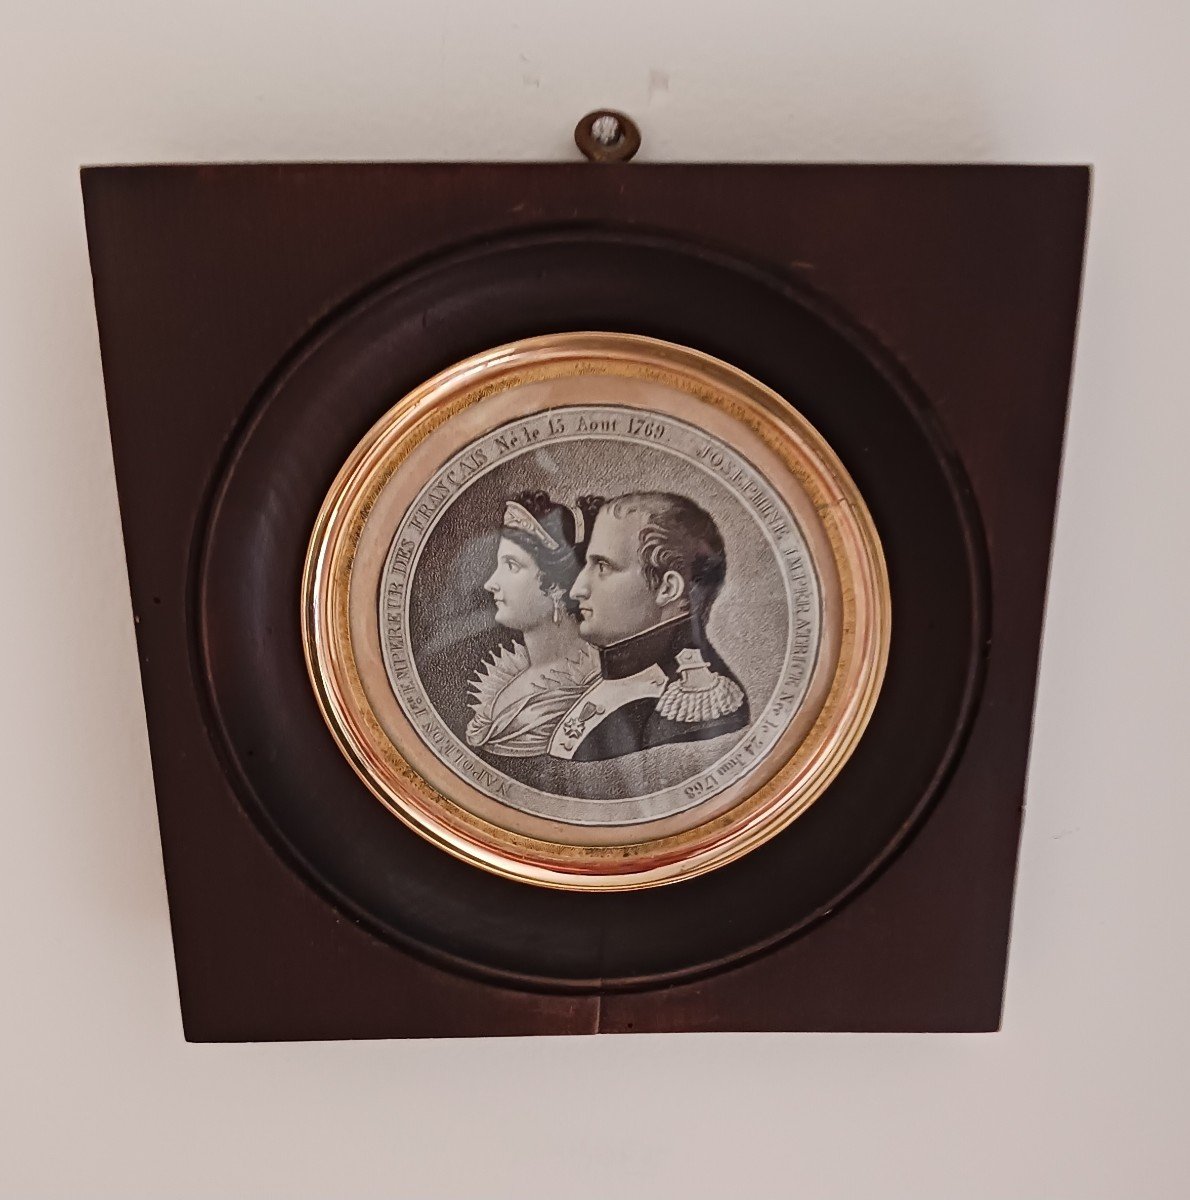 France début XIXe siècle - gravure en médaillon - Napoléon et Joséphine - souvenir historique-photo-1